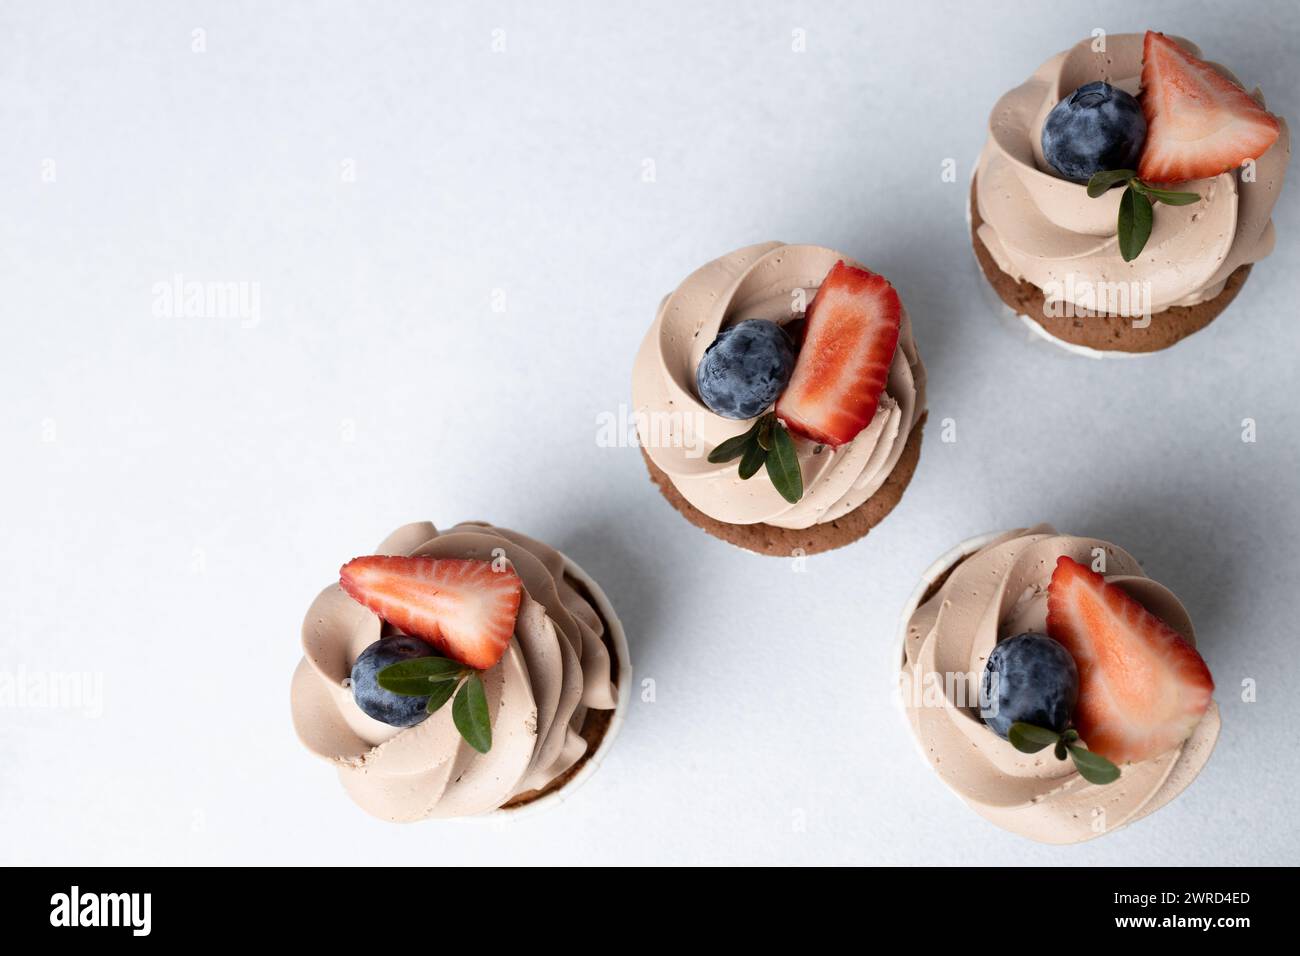 Vue de dessus de cupcakes au chocolat avec glaçage au fromage à la crème, fraise et myrtille sur fond clair Banque D'Images